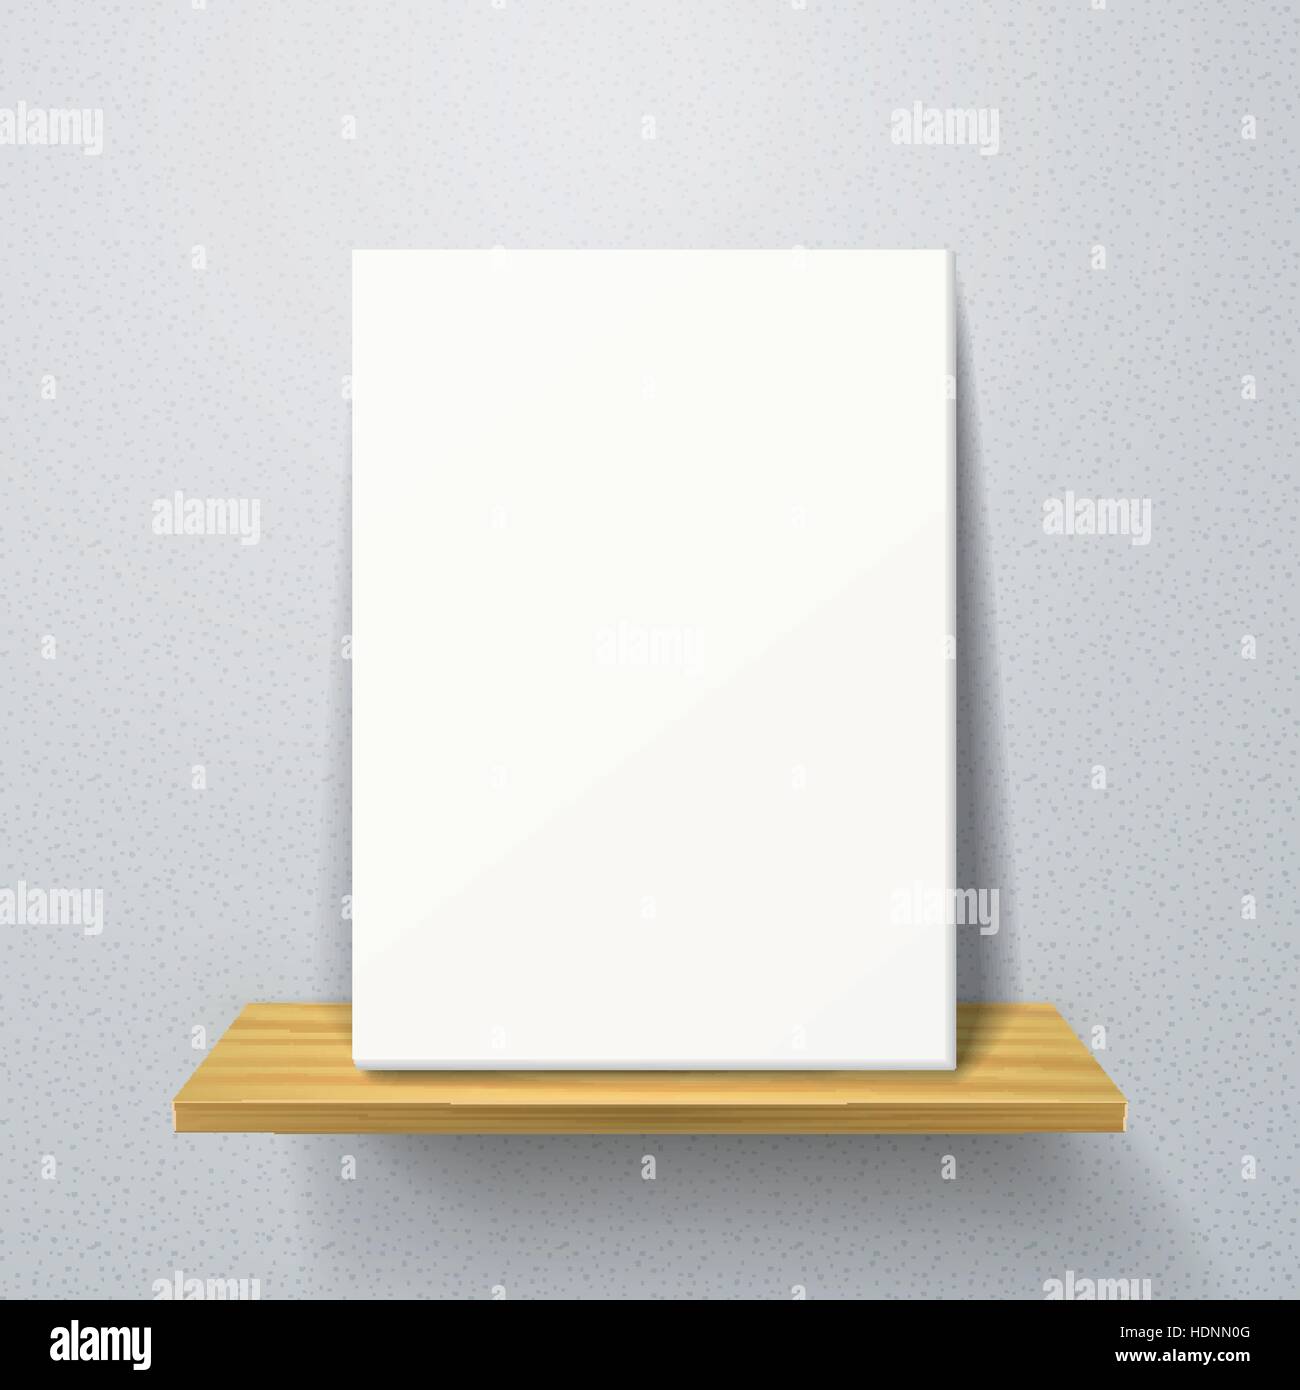 https://c8.alamy.com/comp/HDNN0G/vector-3d-white-poster-on-a-wooden-shelf-HDNN0G.jpg